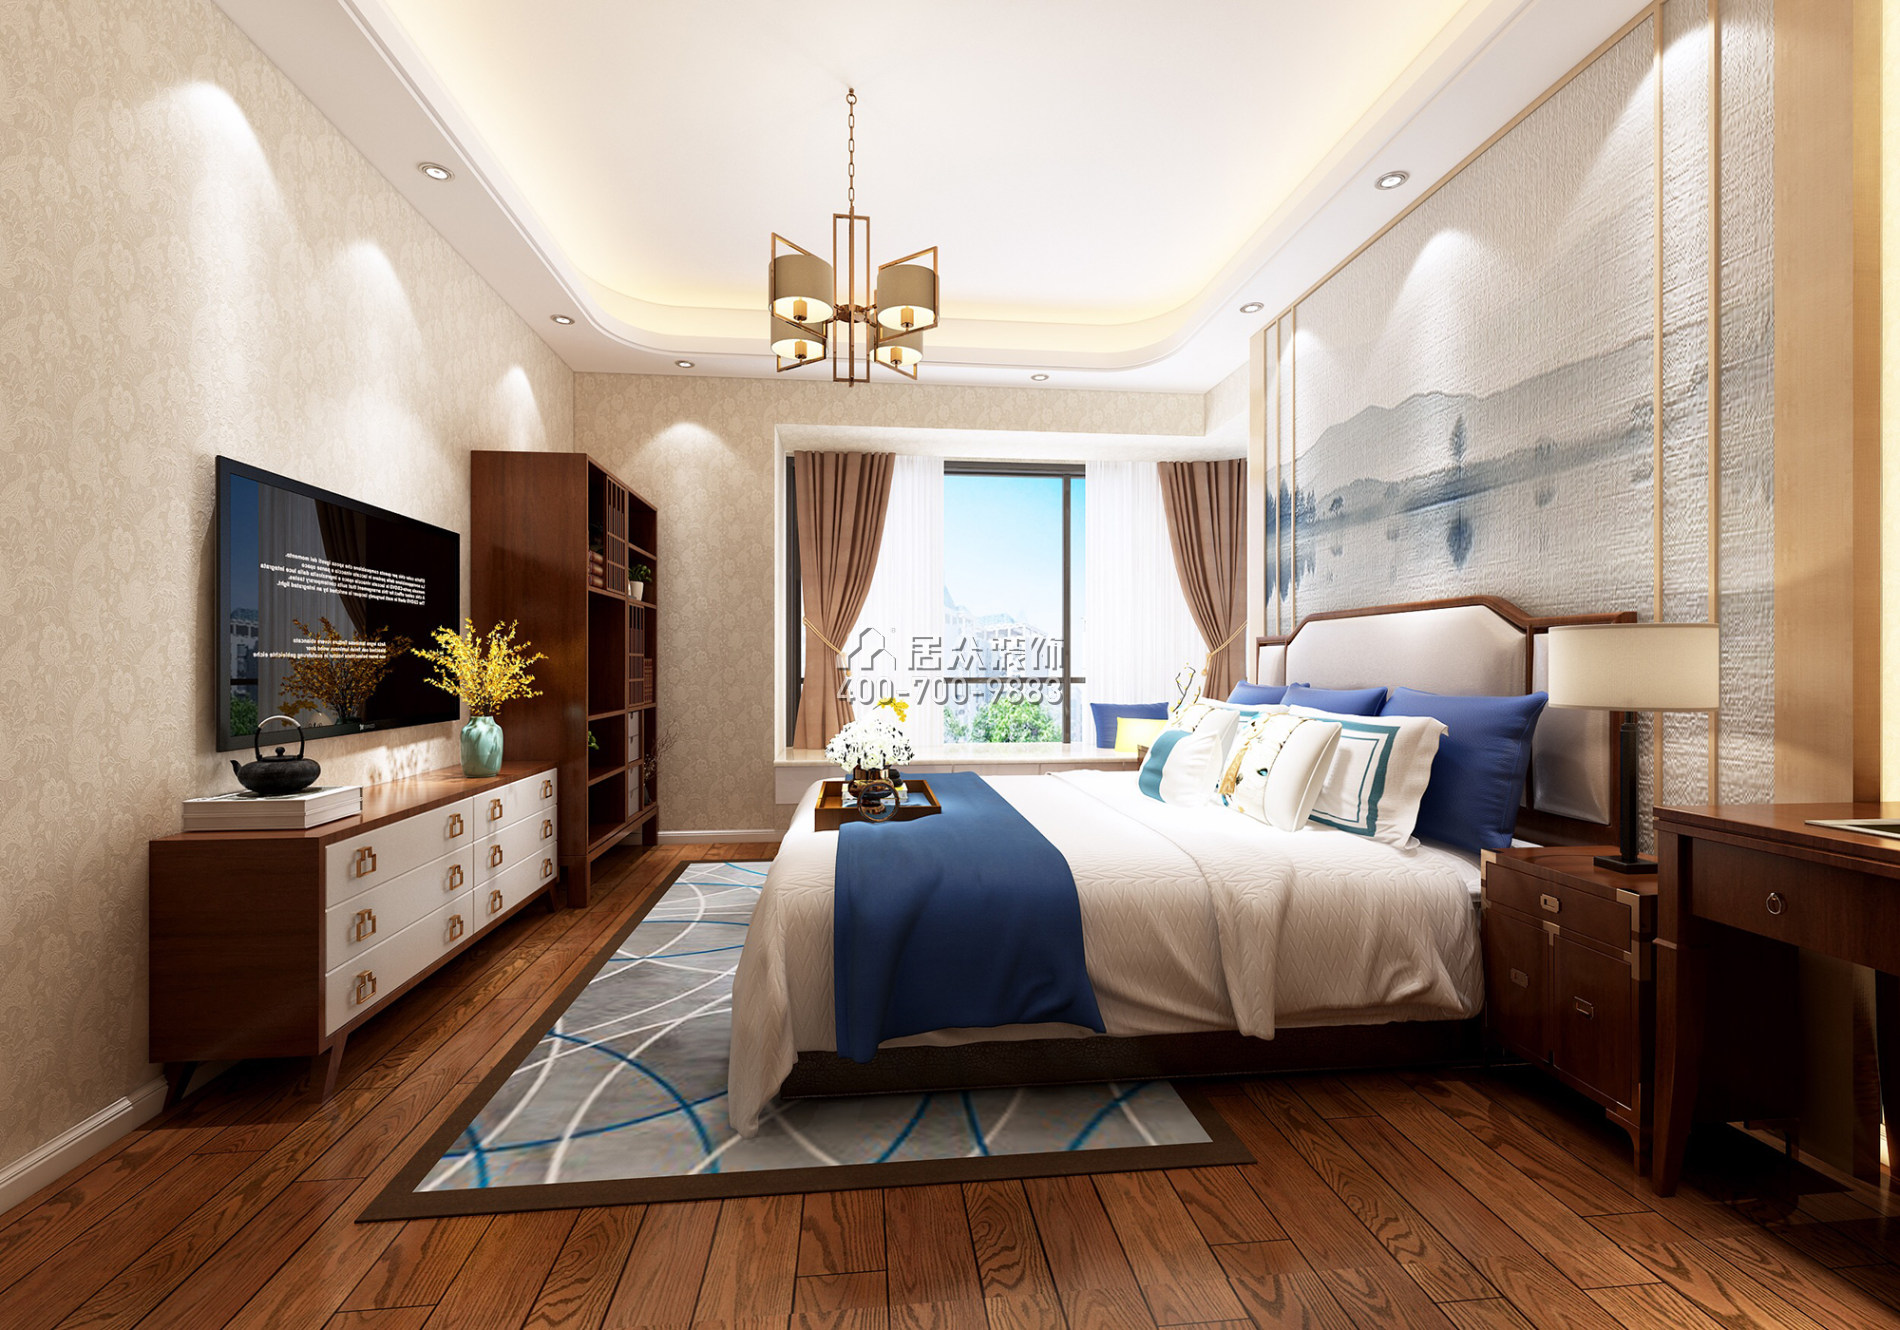 悅盈新城240平方米中式風格平層戶型臥室裝修效果圖